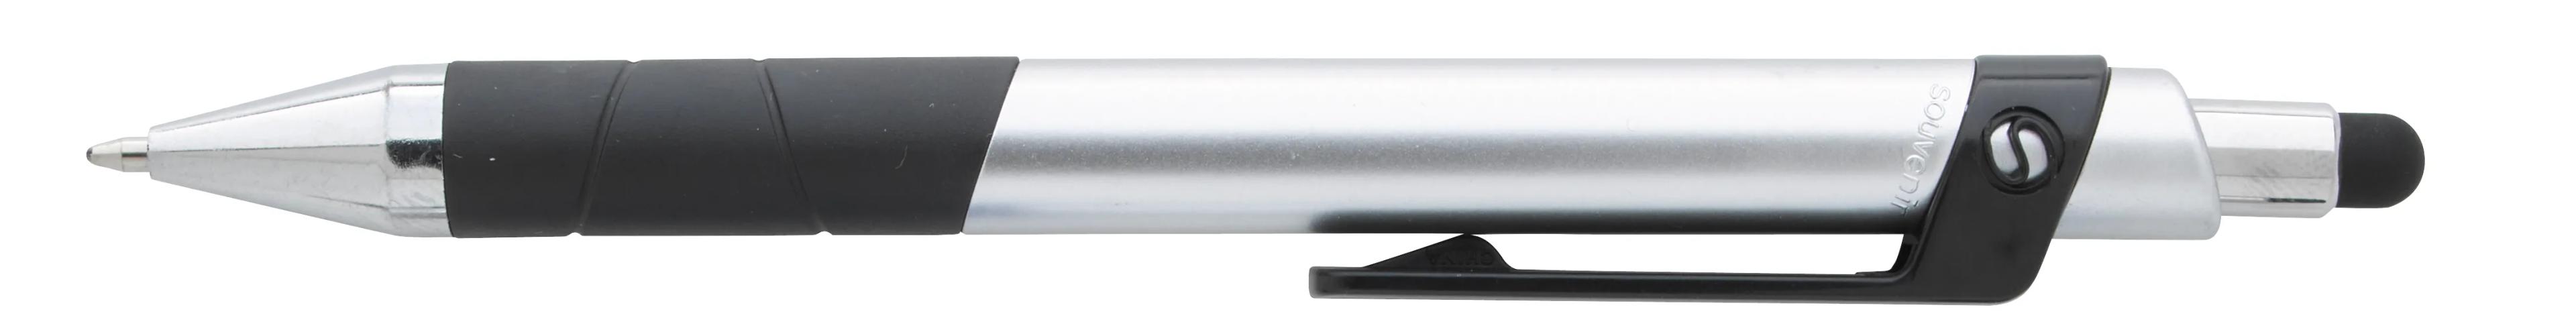 Souvenir® Rize Stylus Pen 4 of 28